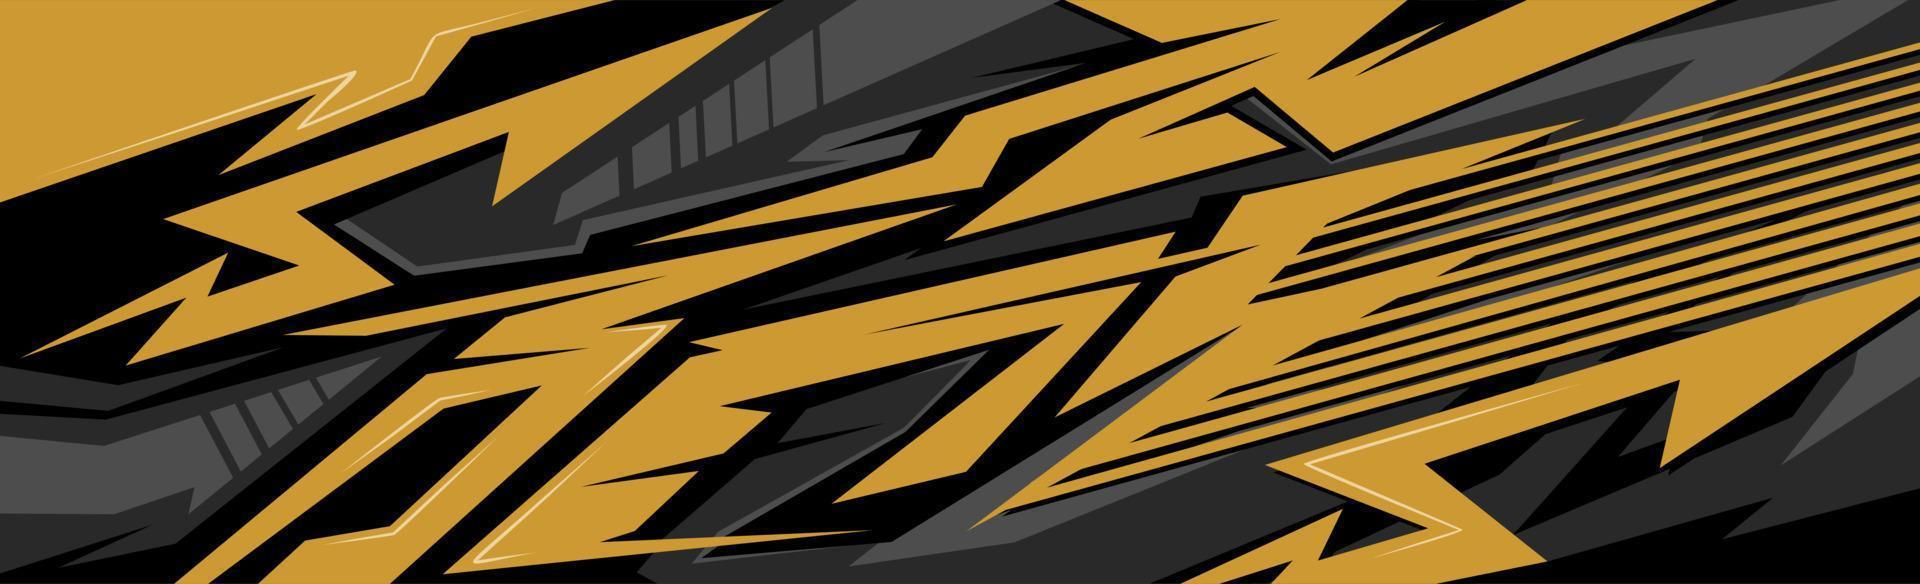 vector de diseño de envoltura de calcomanía de coche dorado y negro. diseños de kits de fondo de carreras de rayas abstractas gráficas para vehículos, autos de carrera, rally, aventura y librea